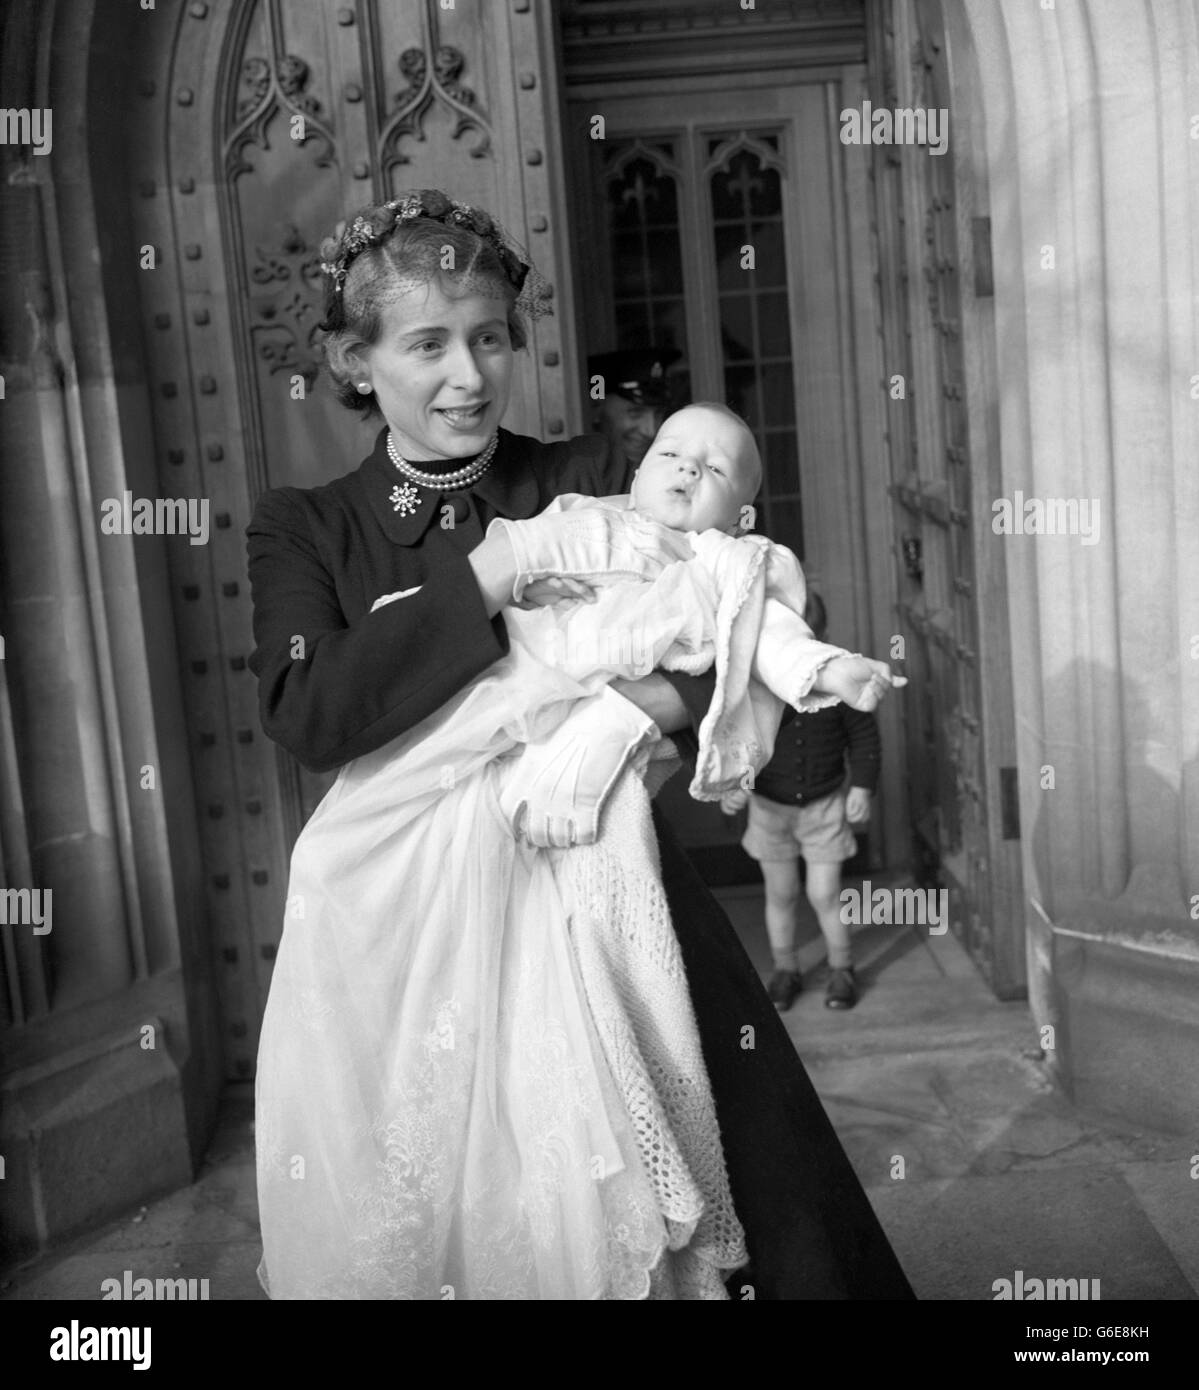 HILARY JAMES, bébé fils de l'honorable Anthony Wedgwood Benn, dans les bras de sa mère après le baptême dans la Chapelle Crypt de la Chambre des communes, Londres.L'honorable Anthony est député travailliste de la division du Sud-est de Bristol. Banque D'Images